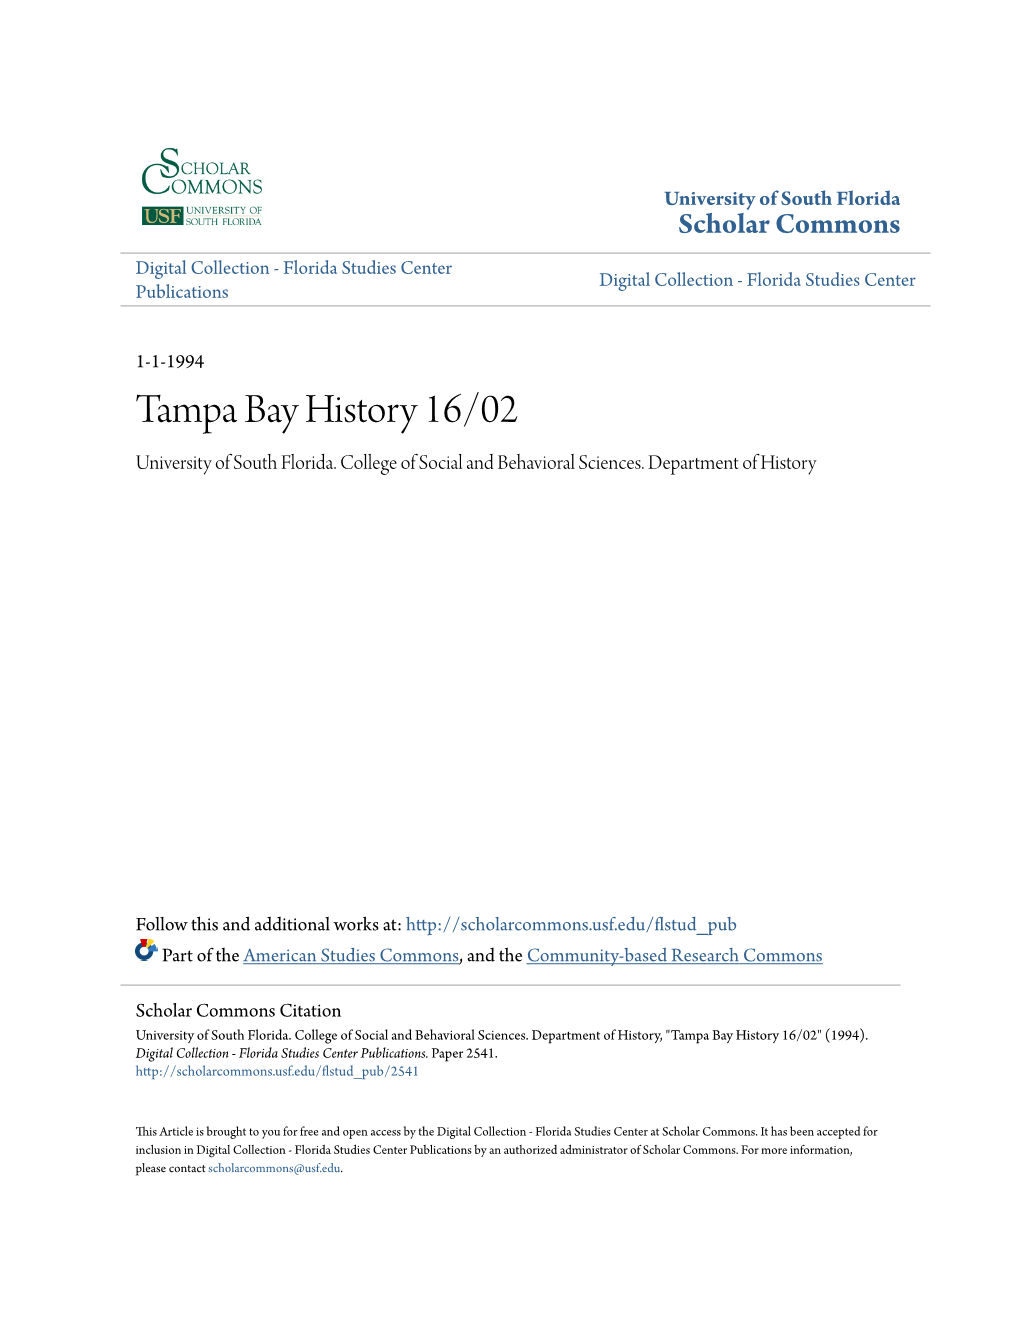 Tampa Bay History 16/02 University of South Florida